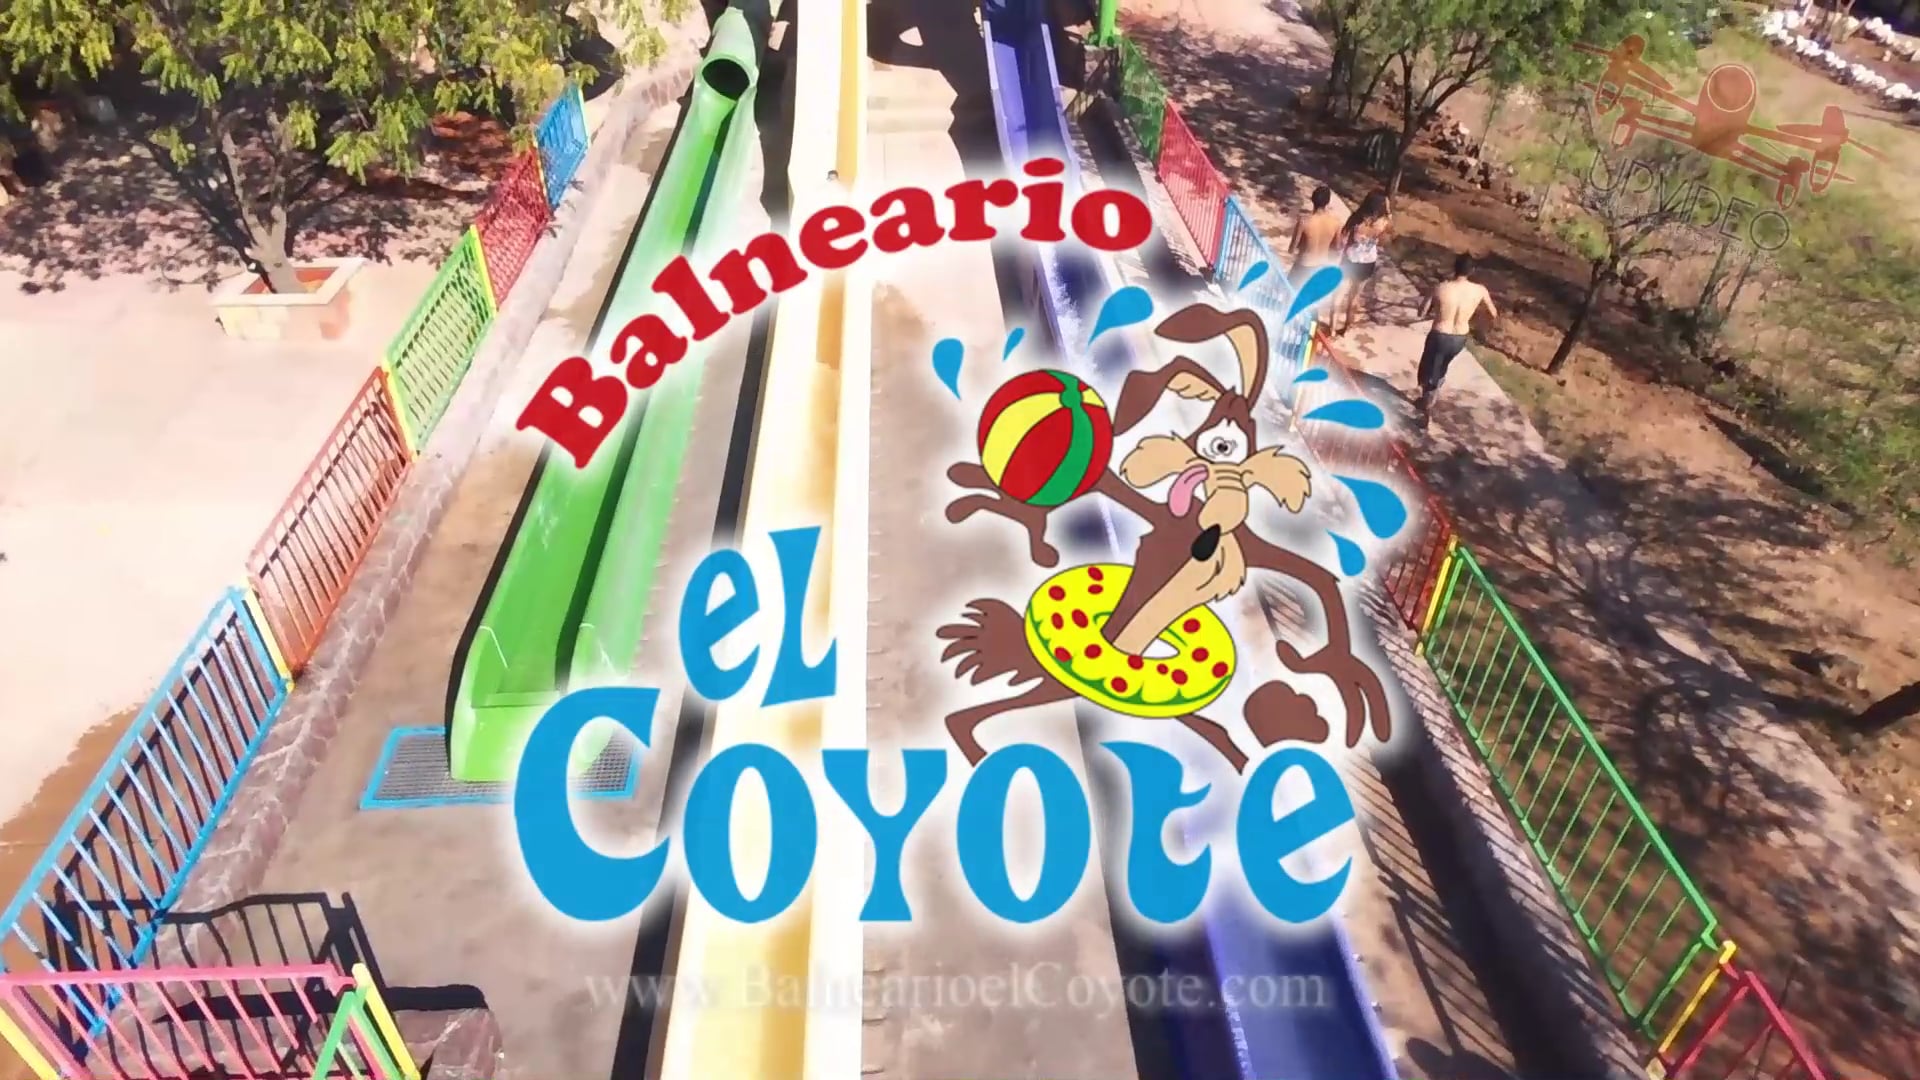 Balneario el Coyote en Ciudad Obregón. on Vimeo